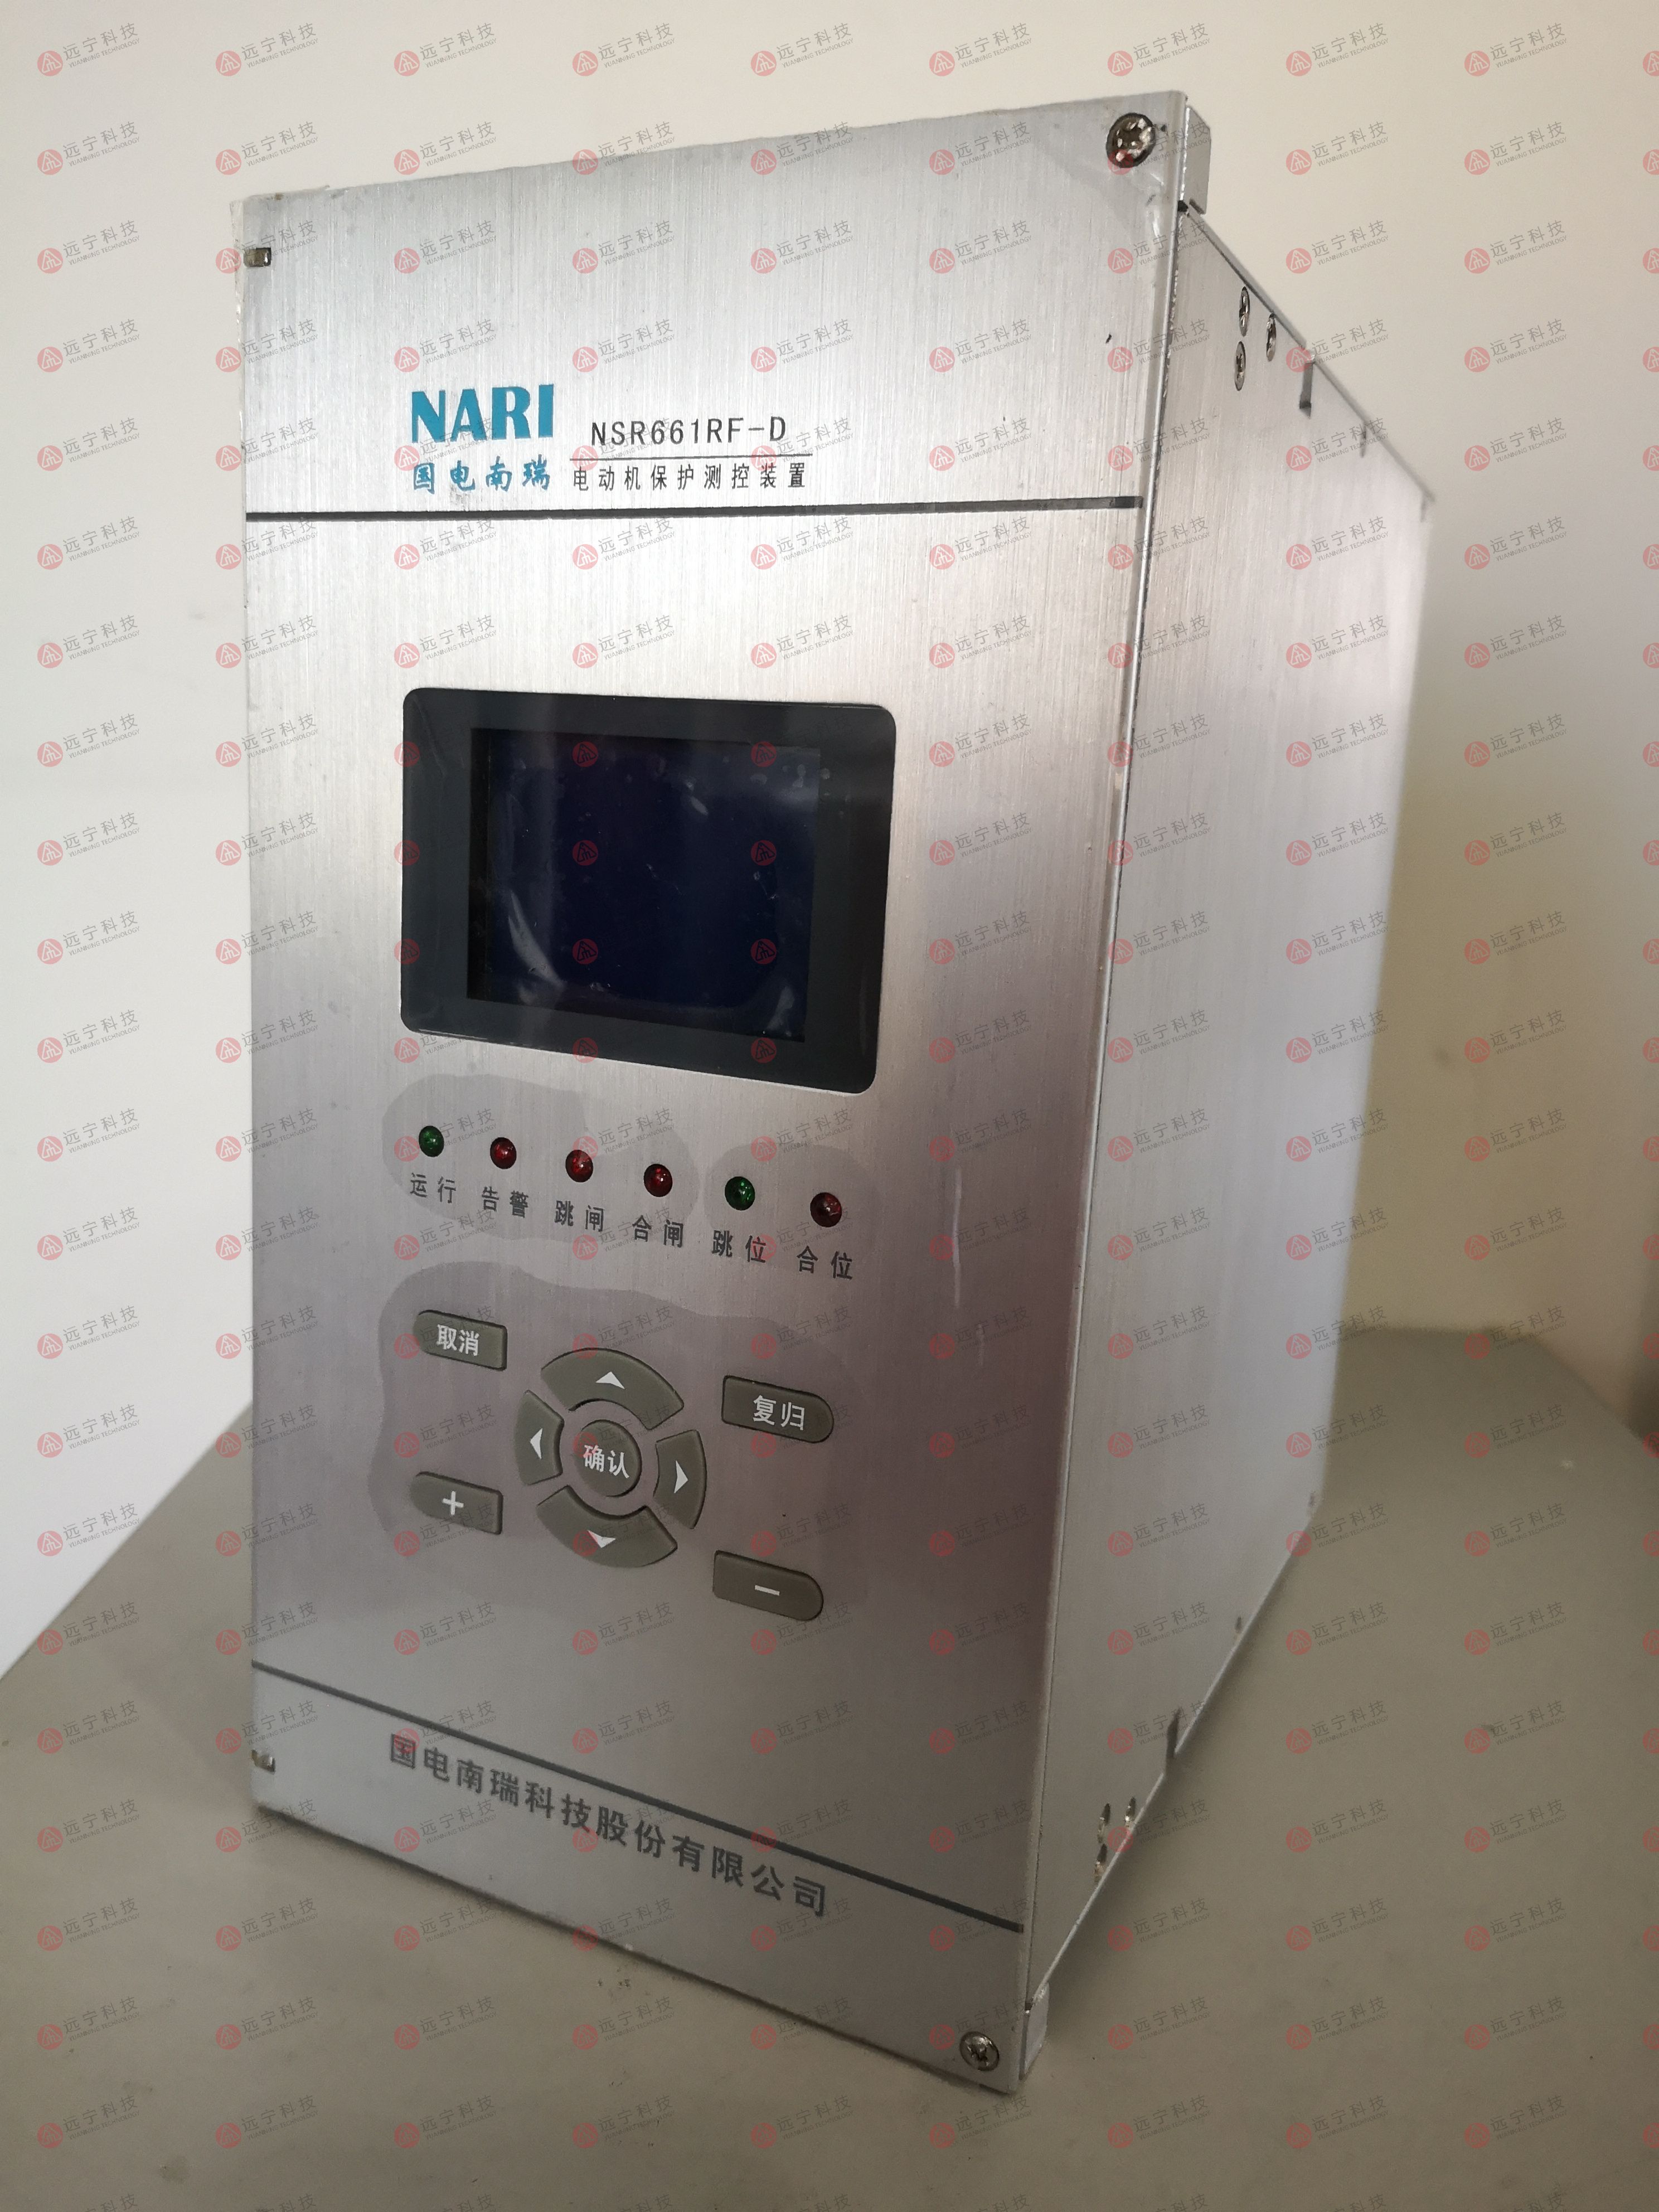 国电南自NSR698RF-D变压器非电量保护装置